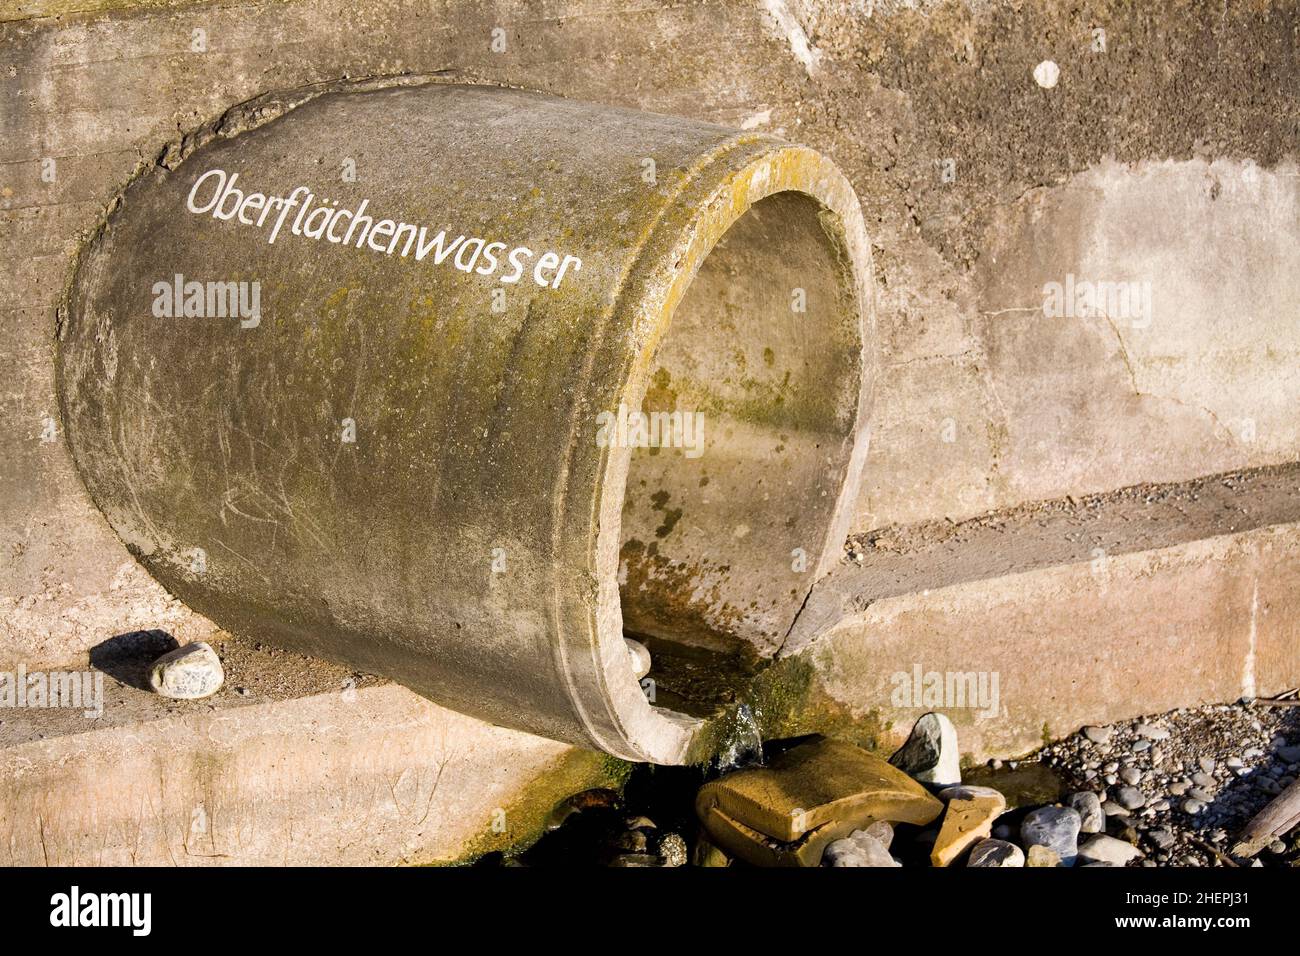 Ablaufrohr mit dem Etikett Oberflächenwasser, Deutschland Stockfoto